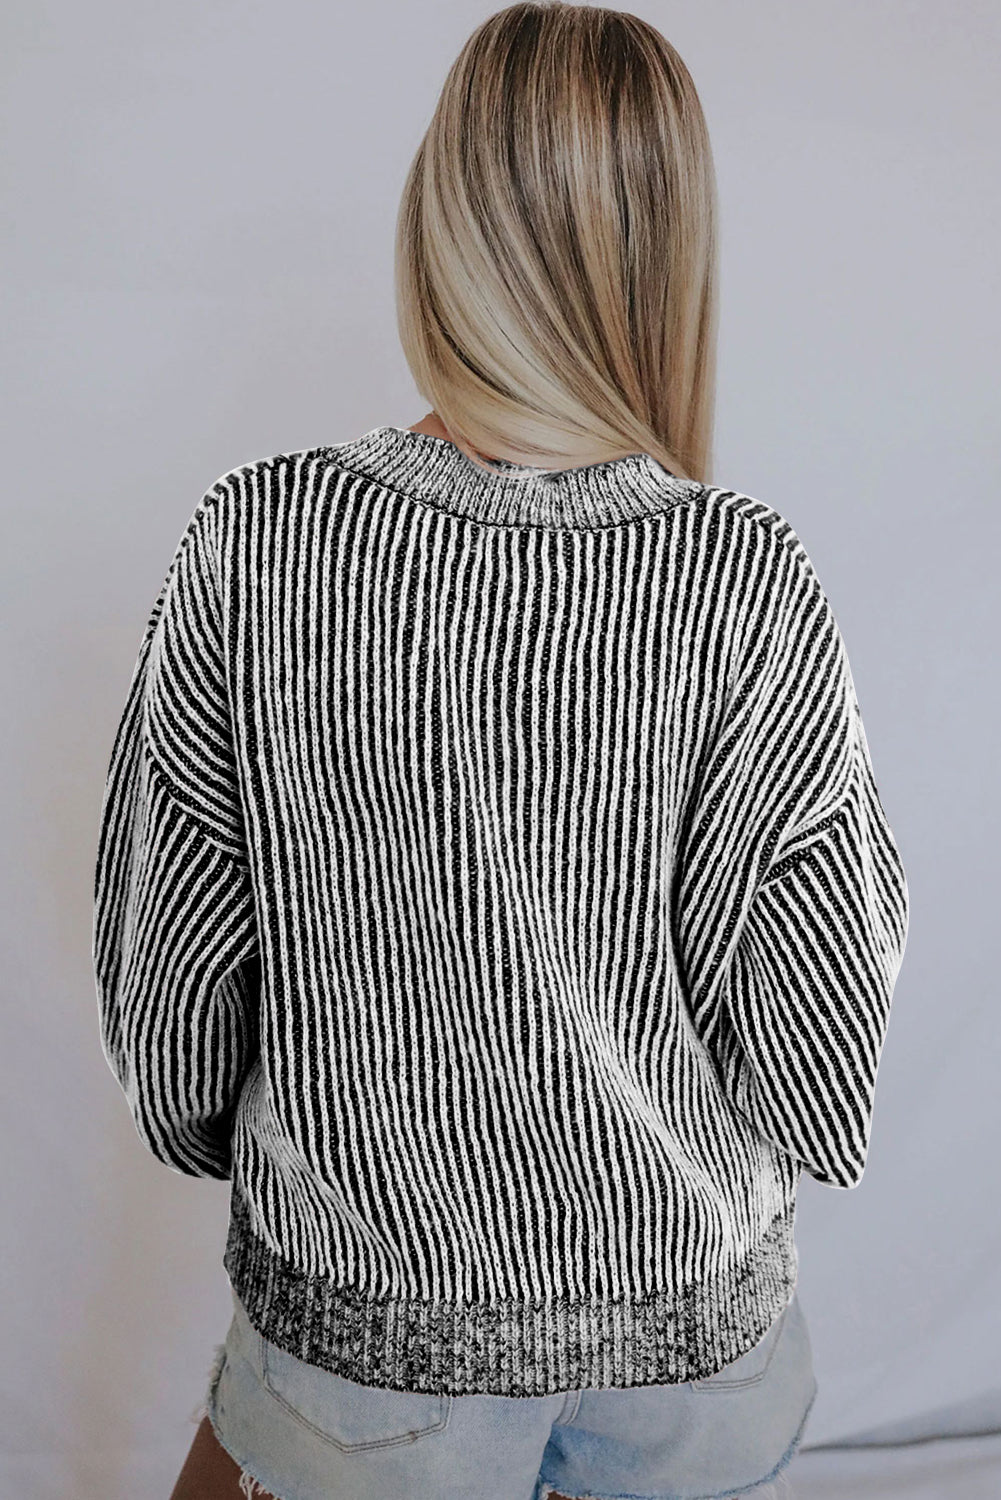 Črn pulover z okroglim izrezom in rebrastim vzorcem